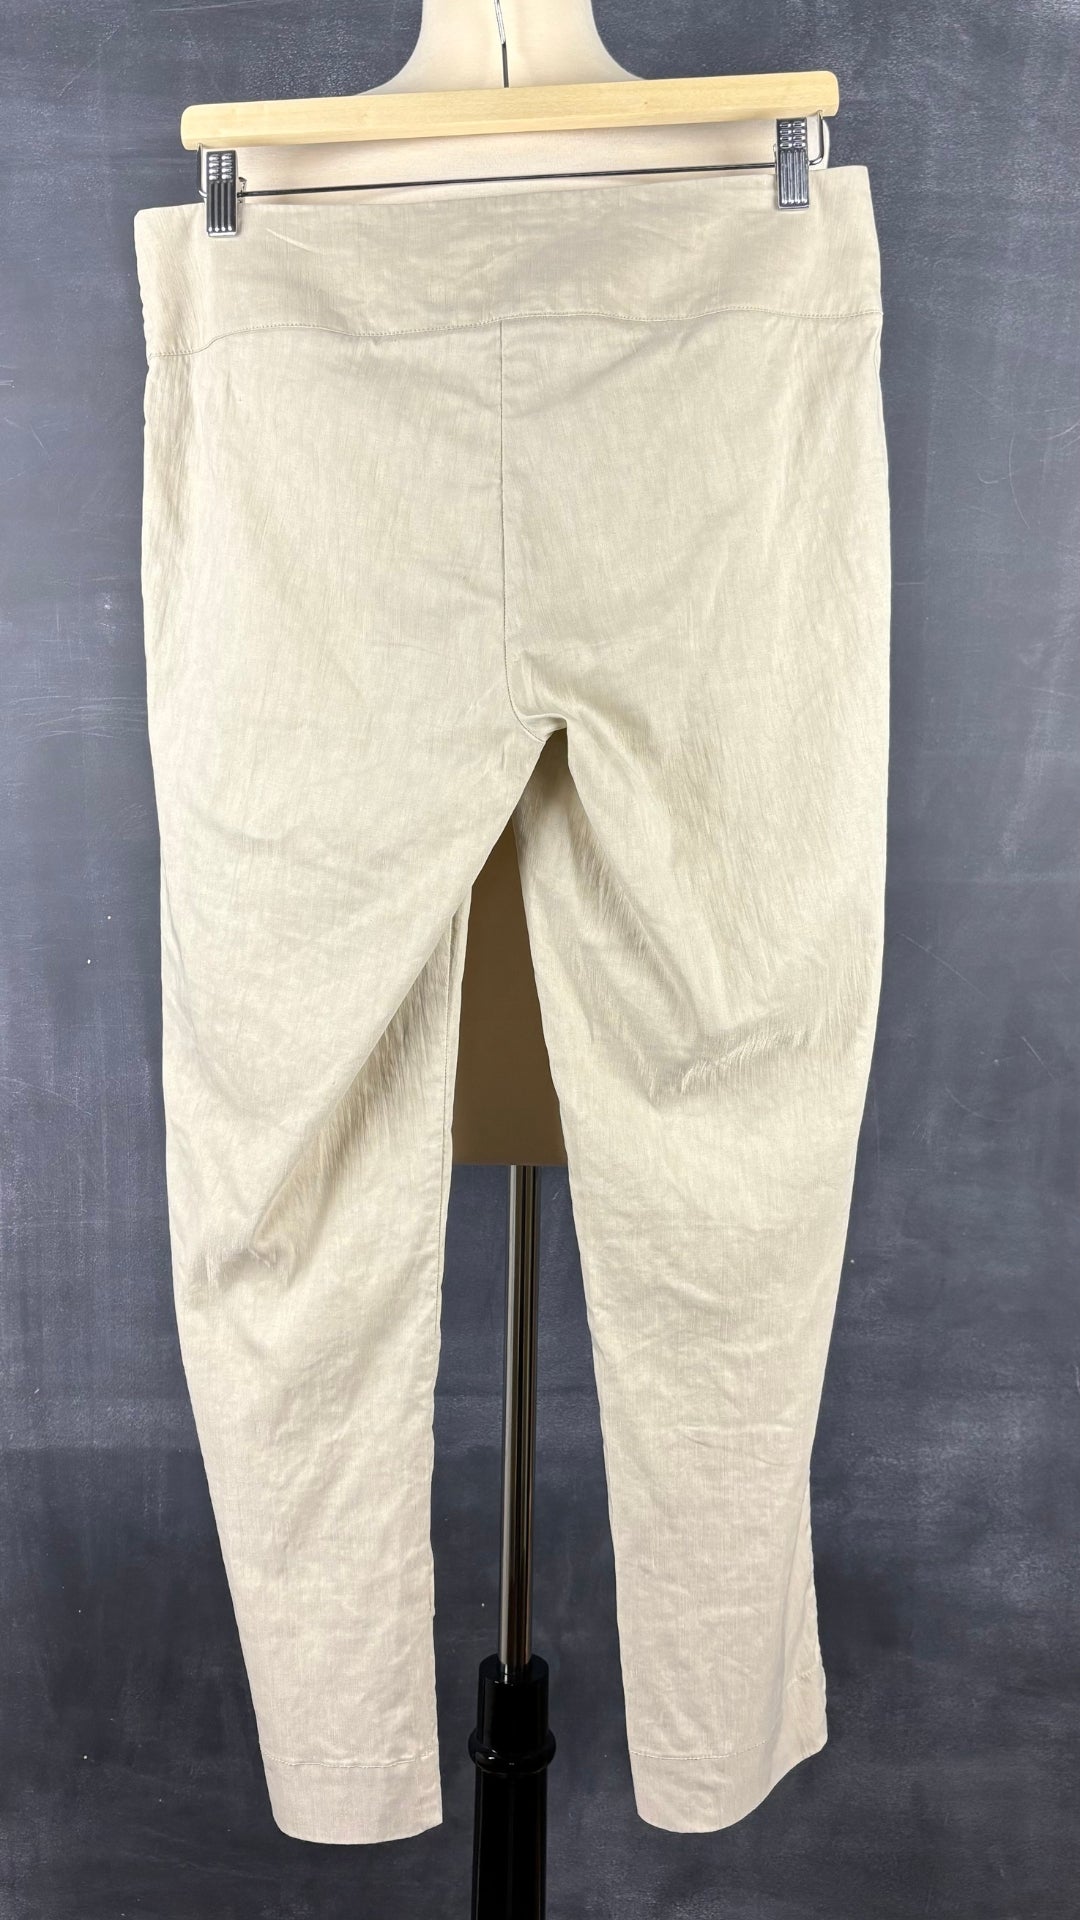 Pantalon beige en mélange de lin Sarah Pacini, taille 2 (m). Vue de dos.